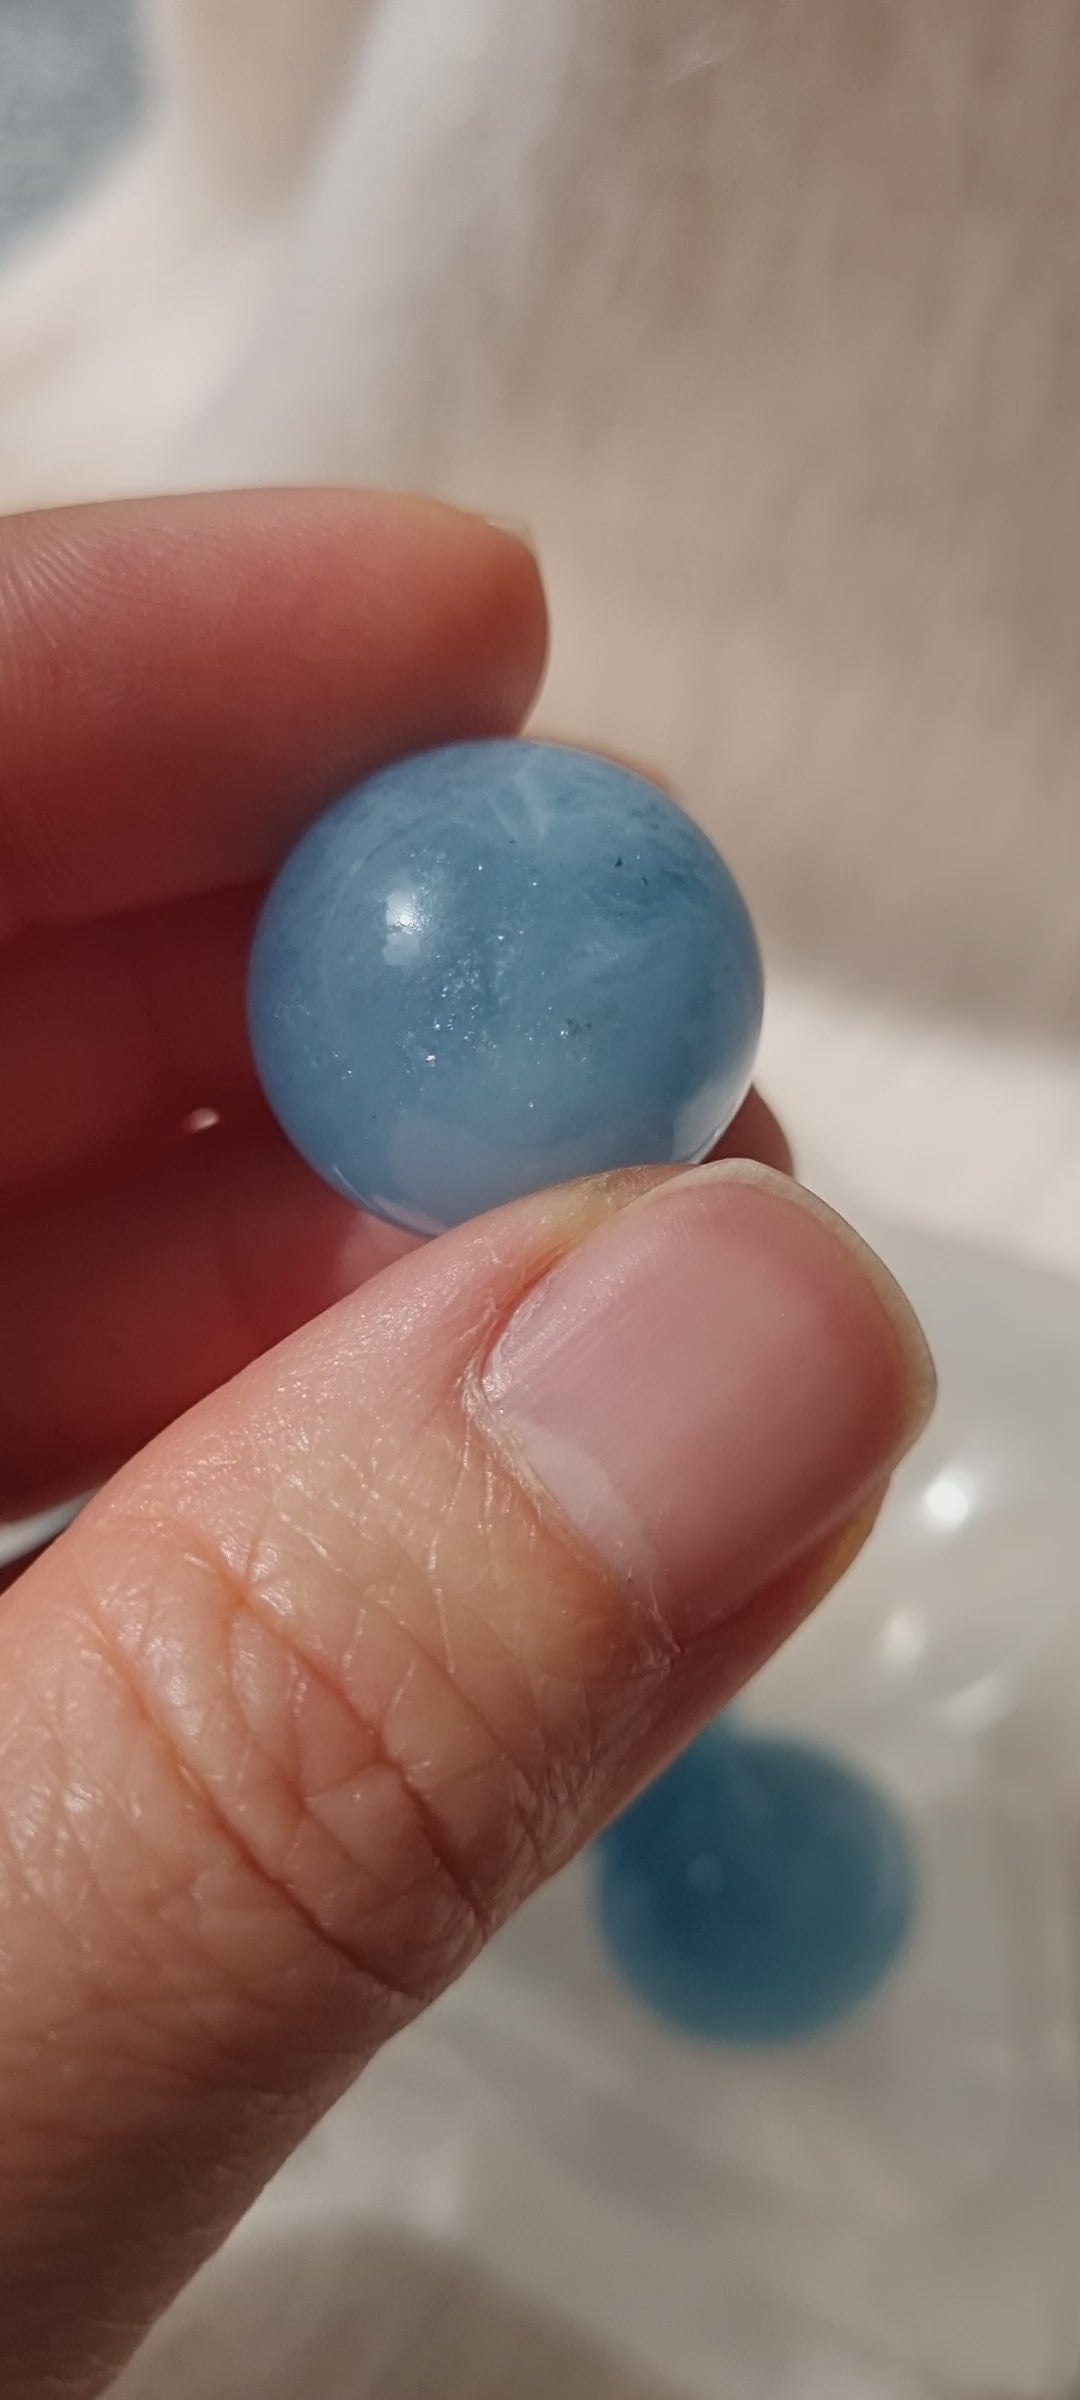 aquamarine spheres